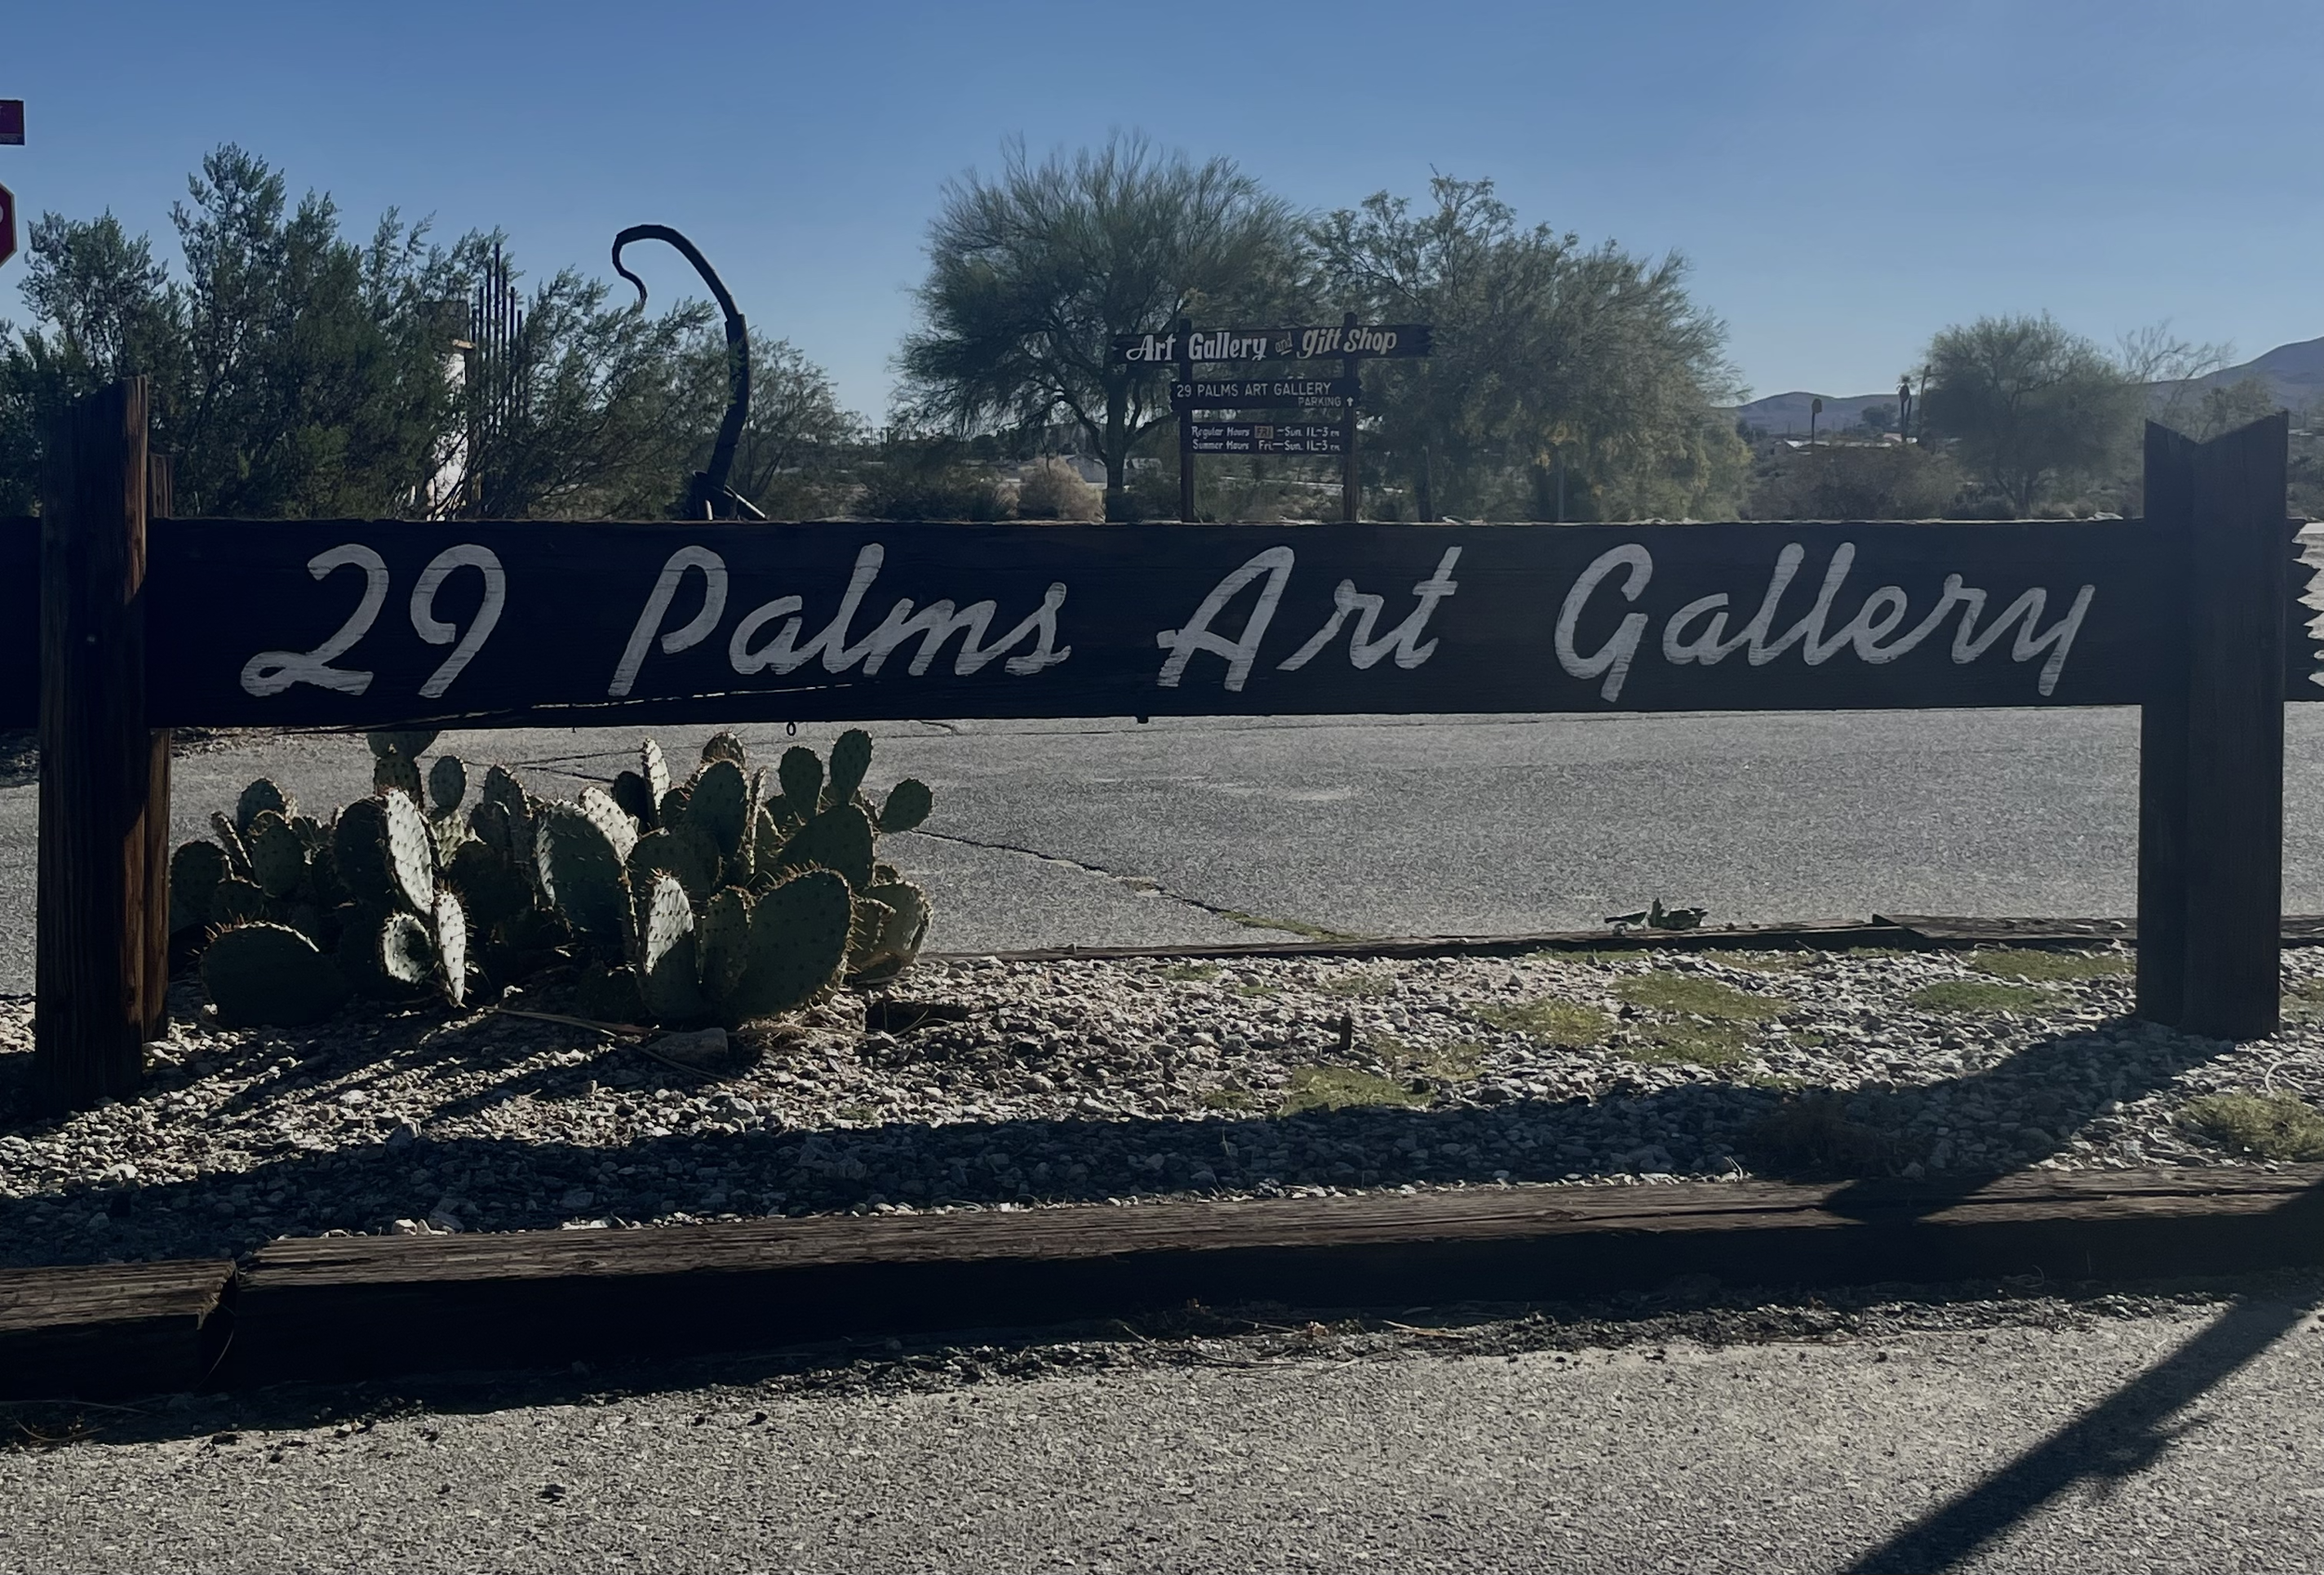 29 Palms Art Gallery HWY 62 Open Studio Art Tours